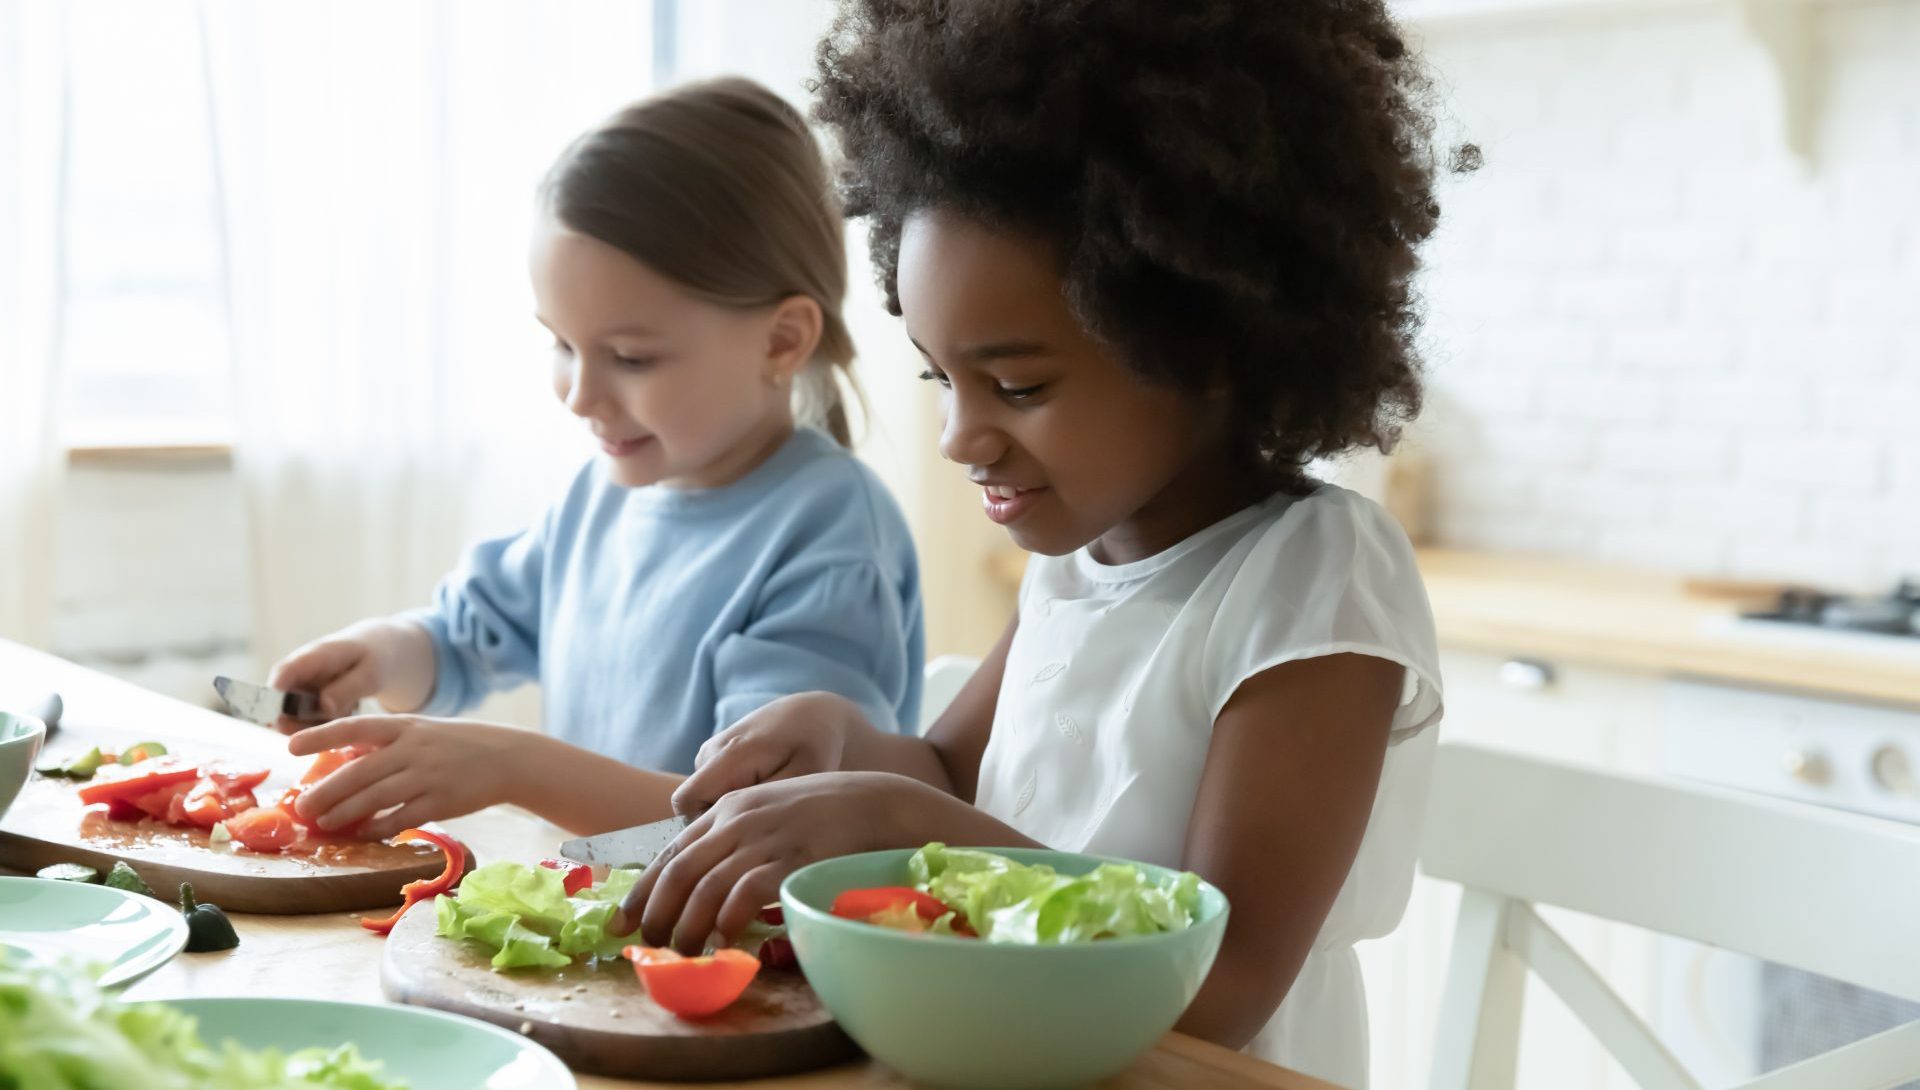 Les enfants cuisinent des fruits et légumes